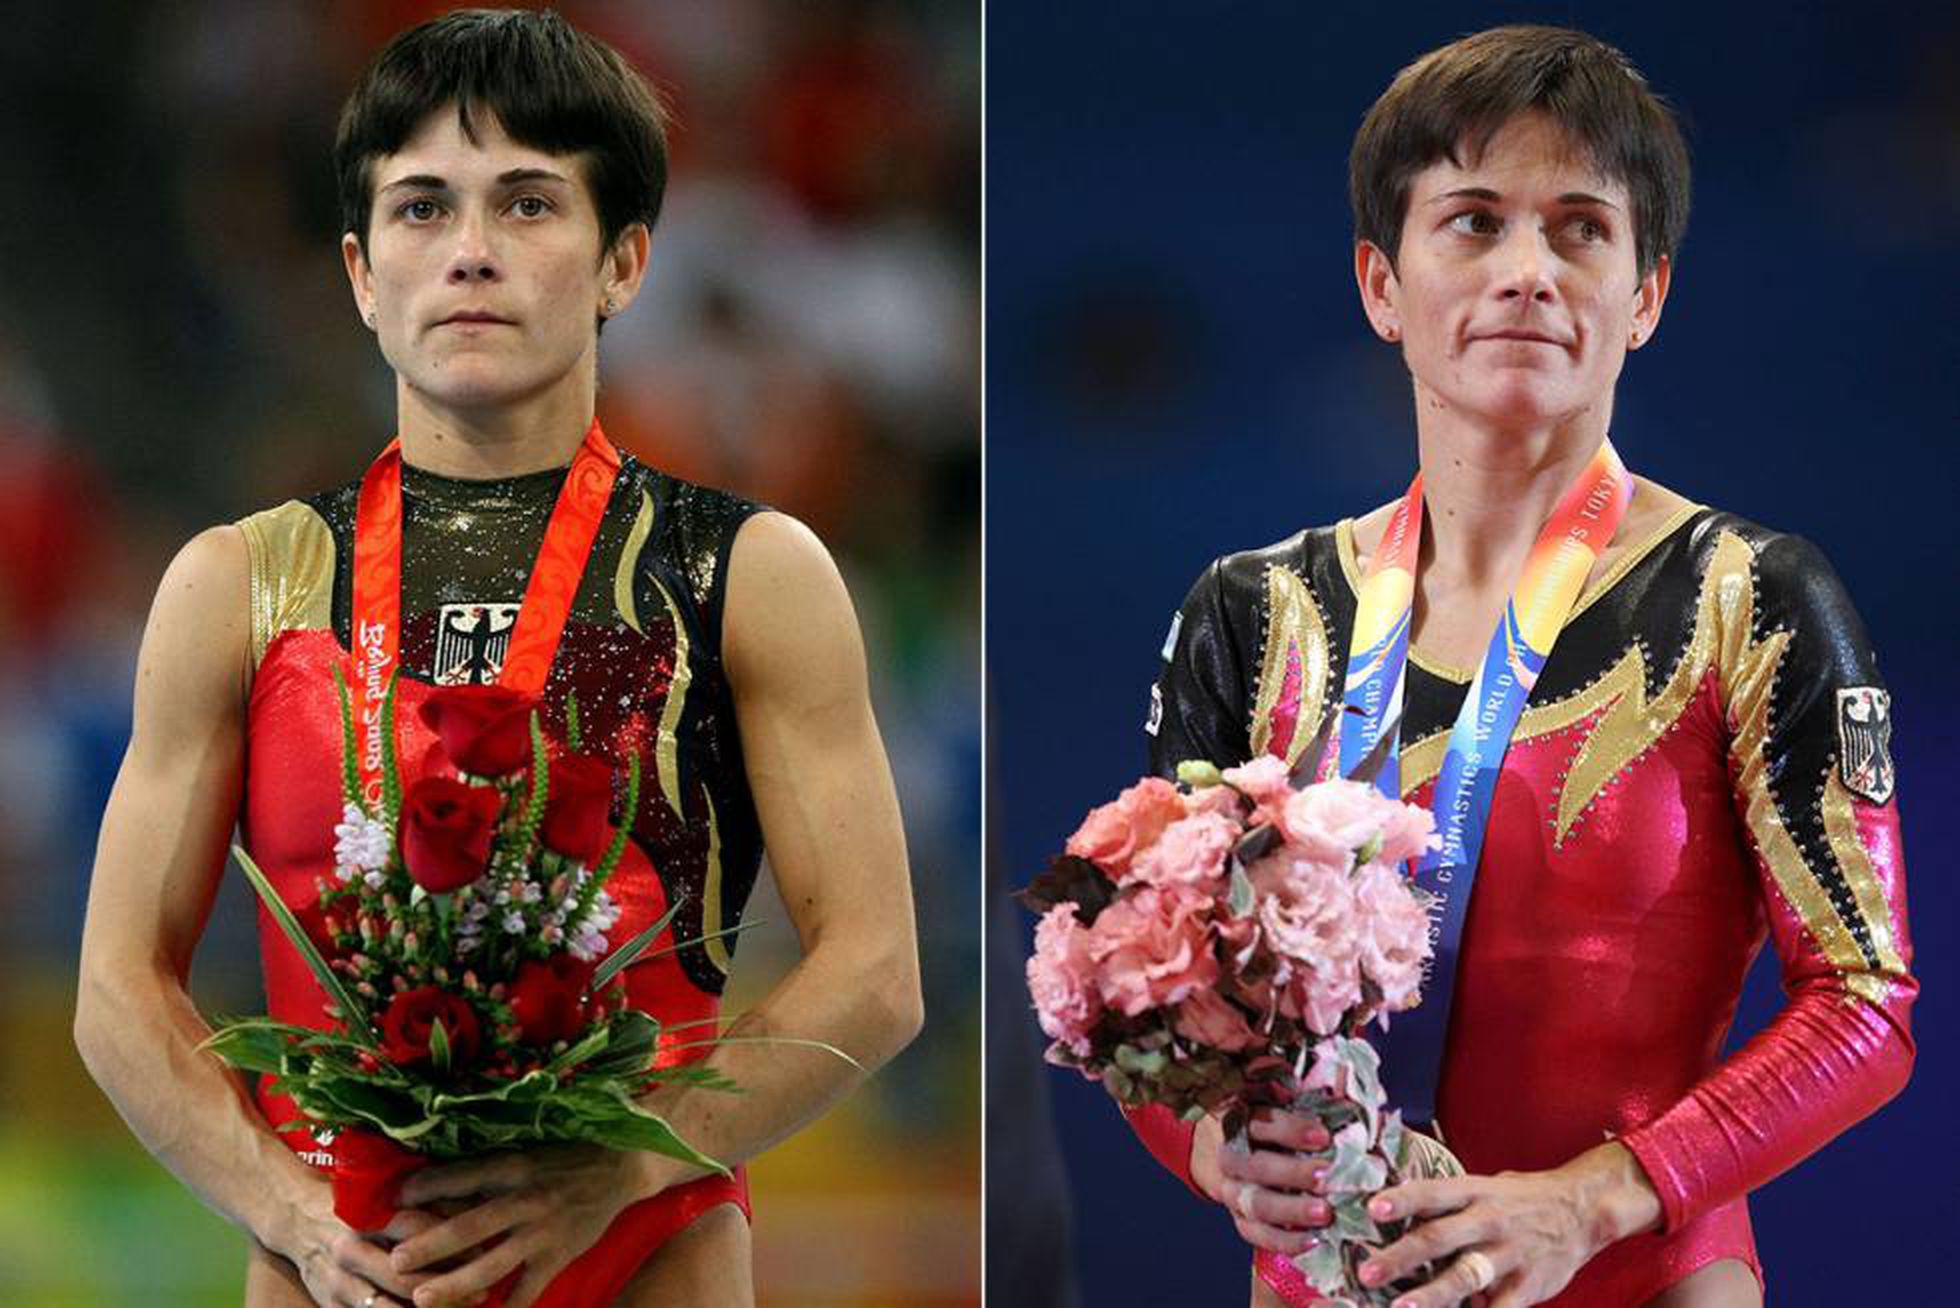 Mulheres na Olimpíada: a idade pode ser um fator limitante para a participação?